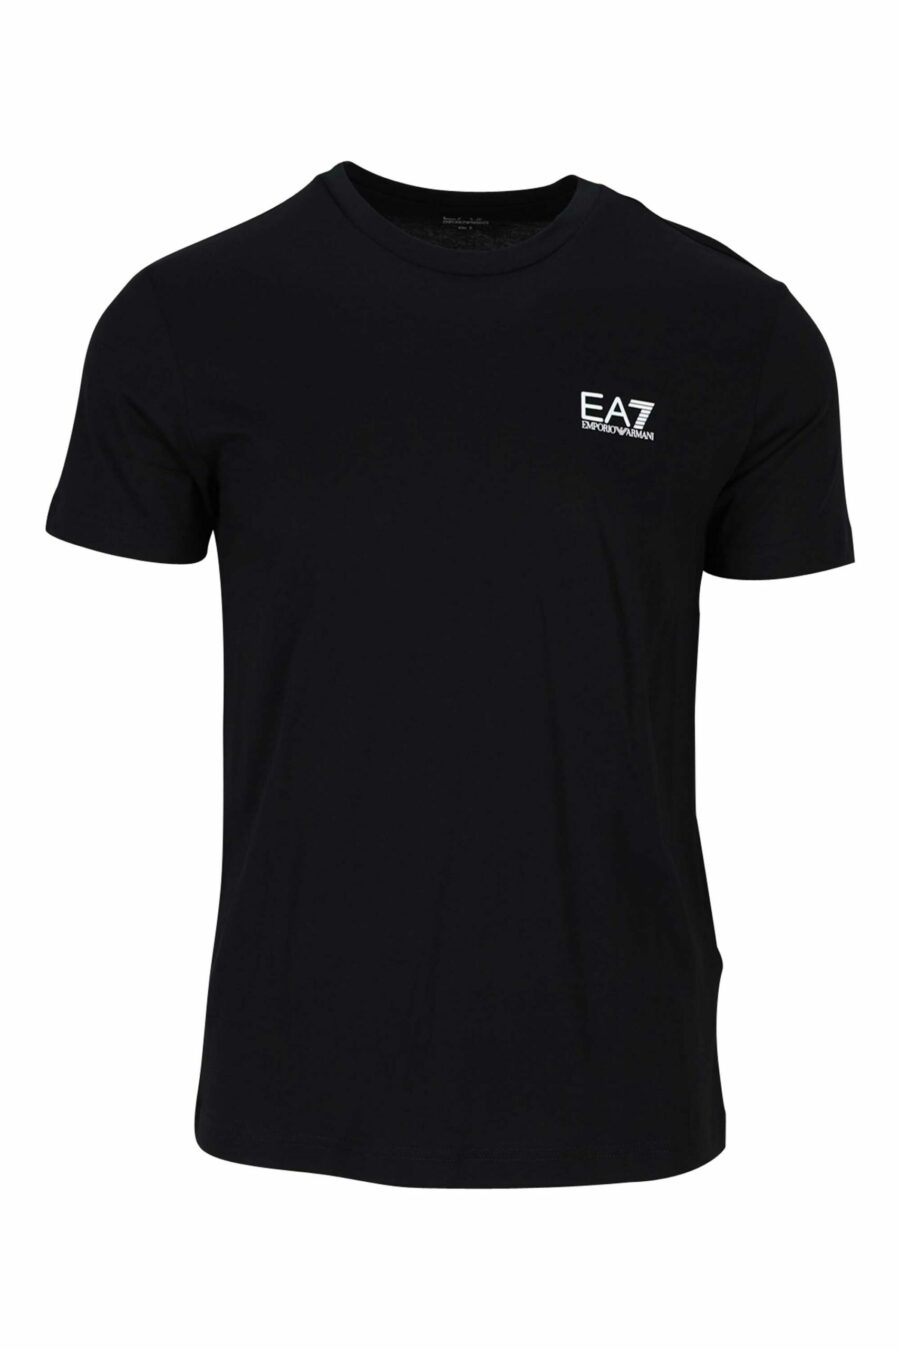 Schwarzes T-Shirt mit weißem Mini-Logo mit Farbverlauf "lux identity" - 8055187167147 skaliert